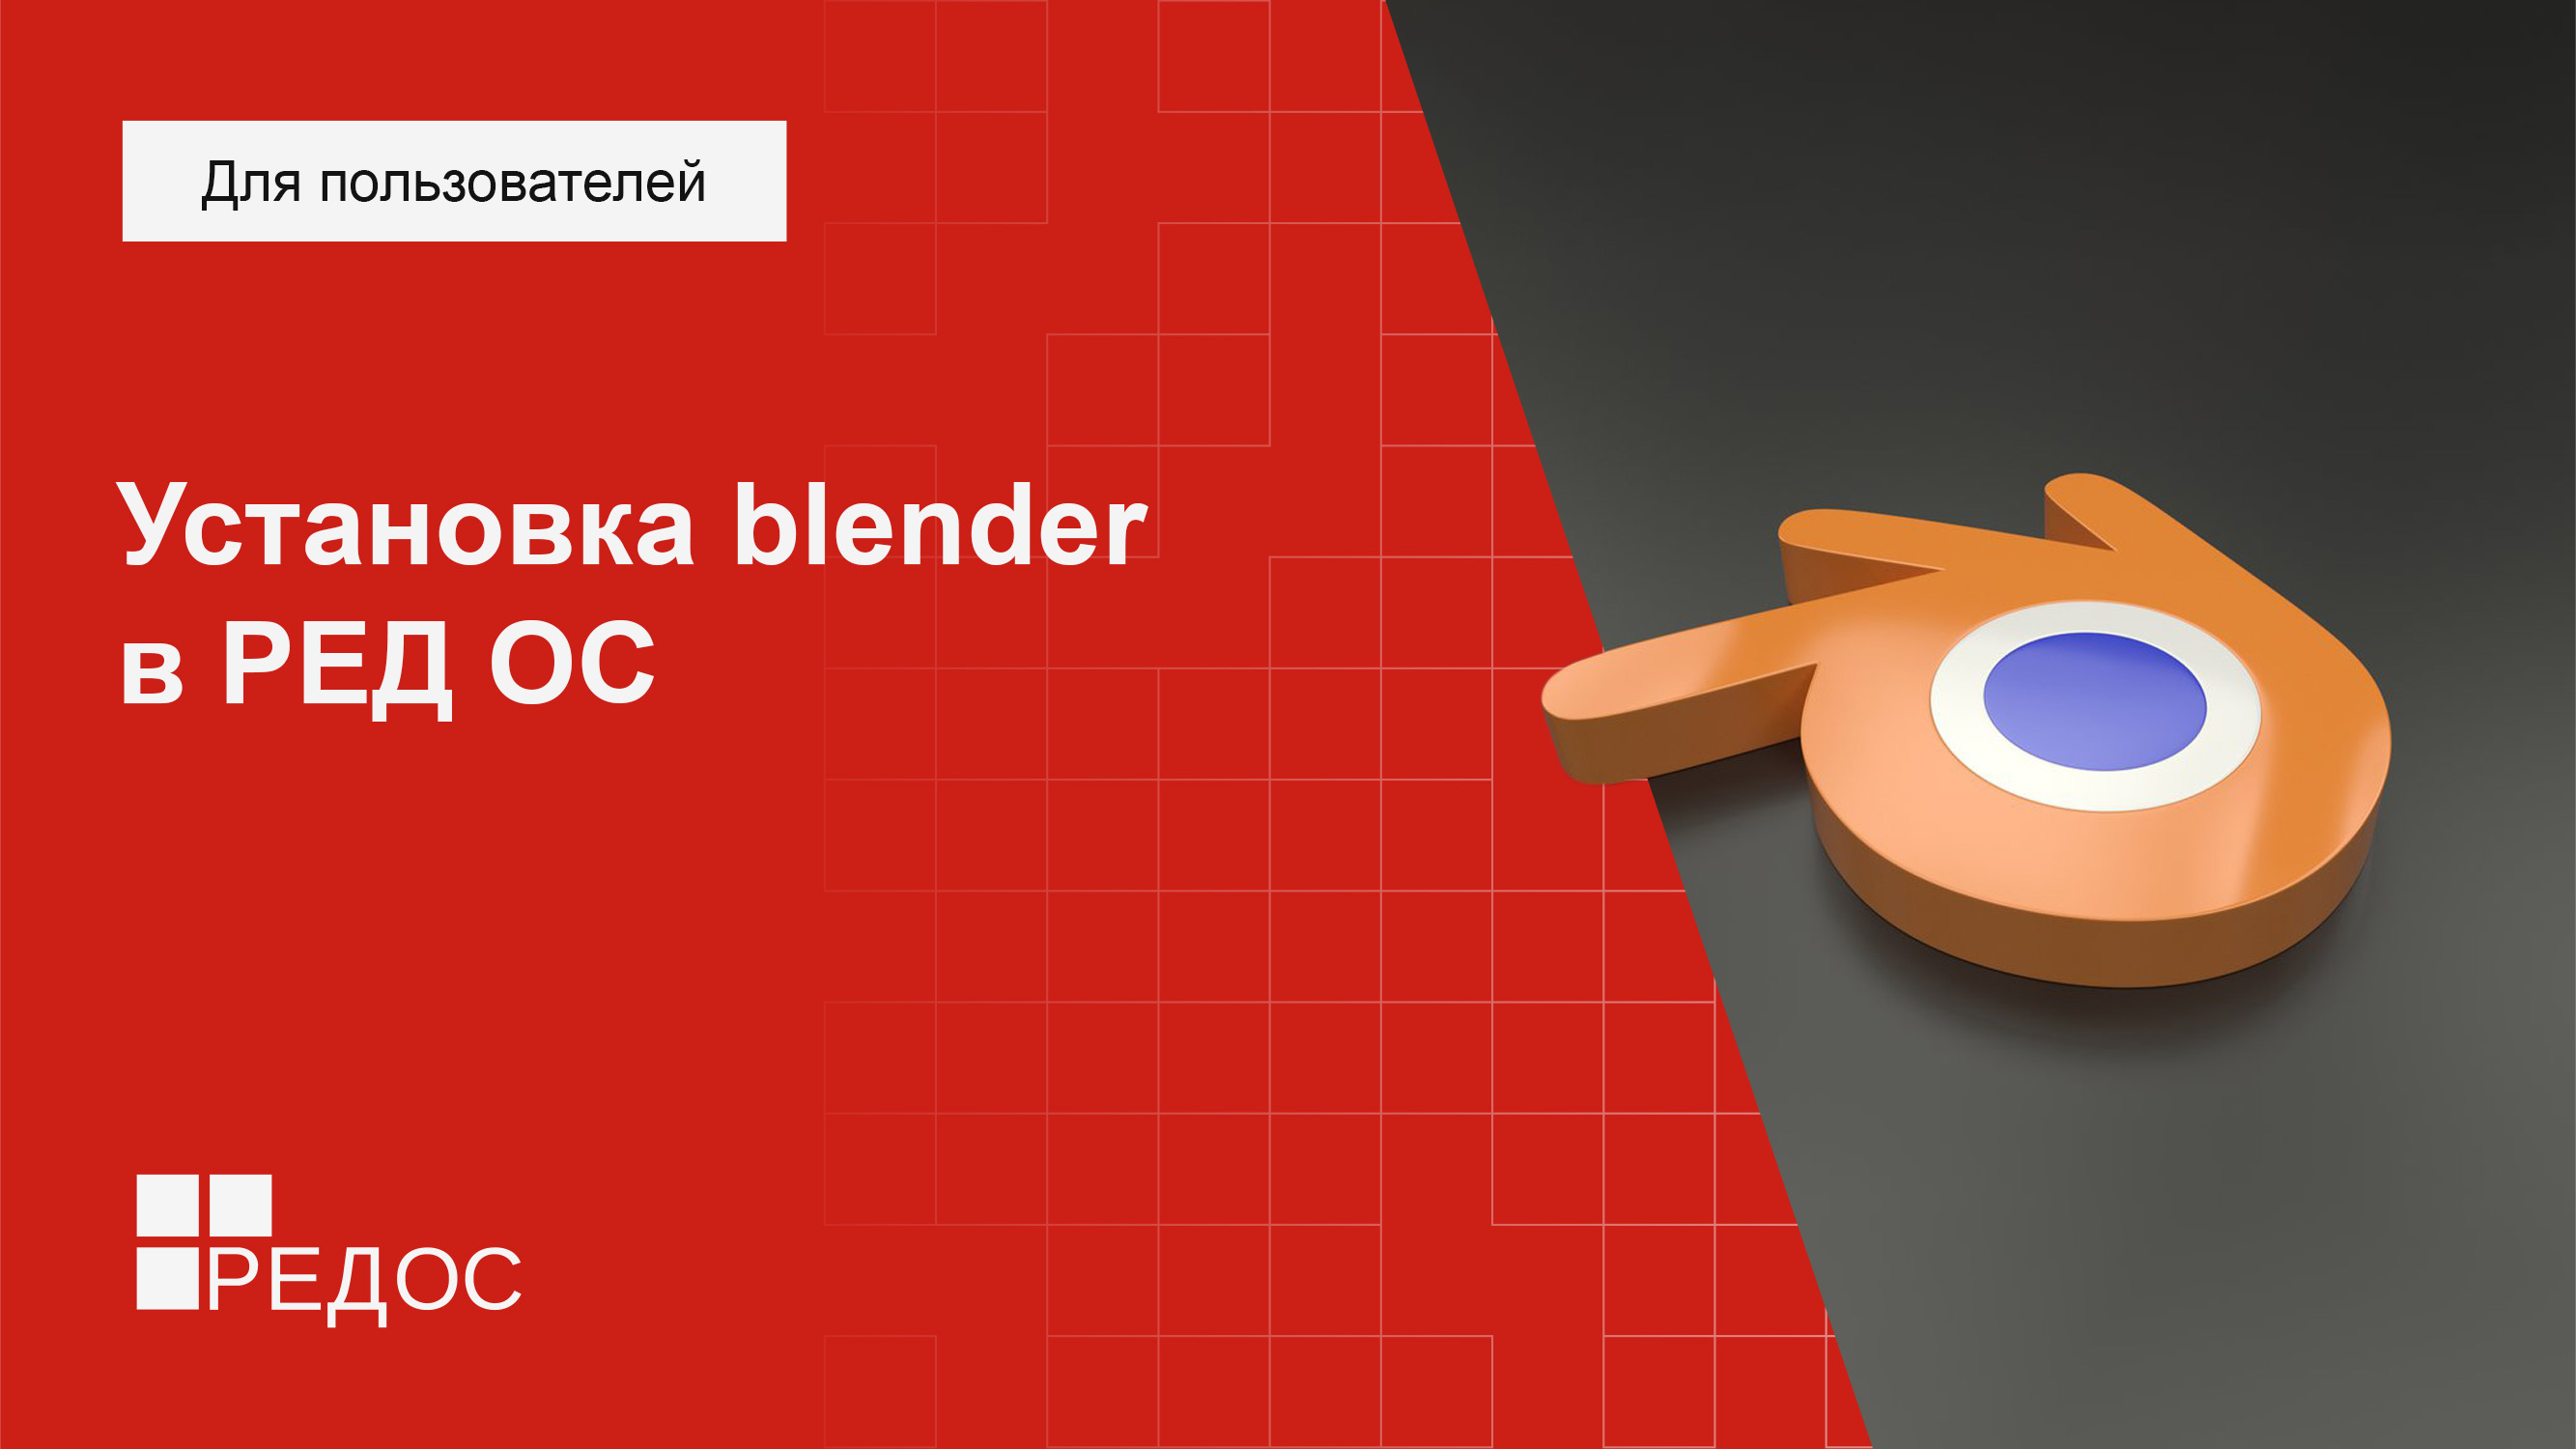 База редос. Установка Blender в ред ОС. Ред ОС. Ред ОС лого. Blender крепление для телефона.